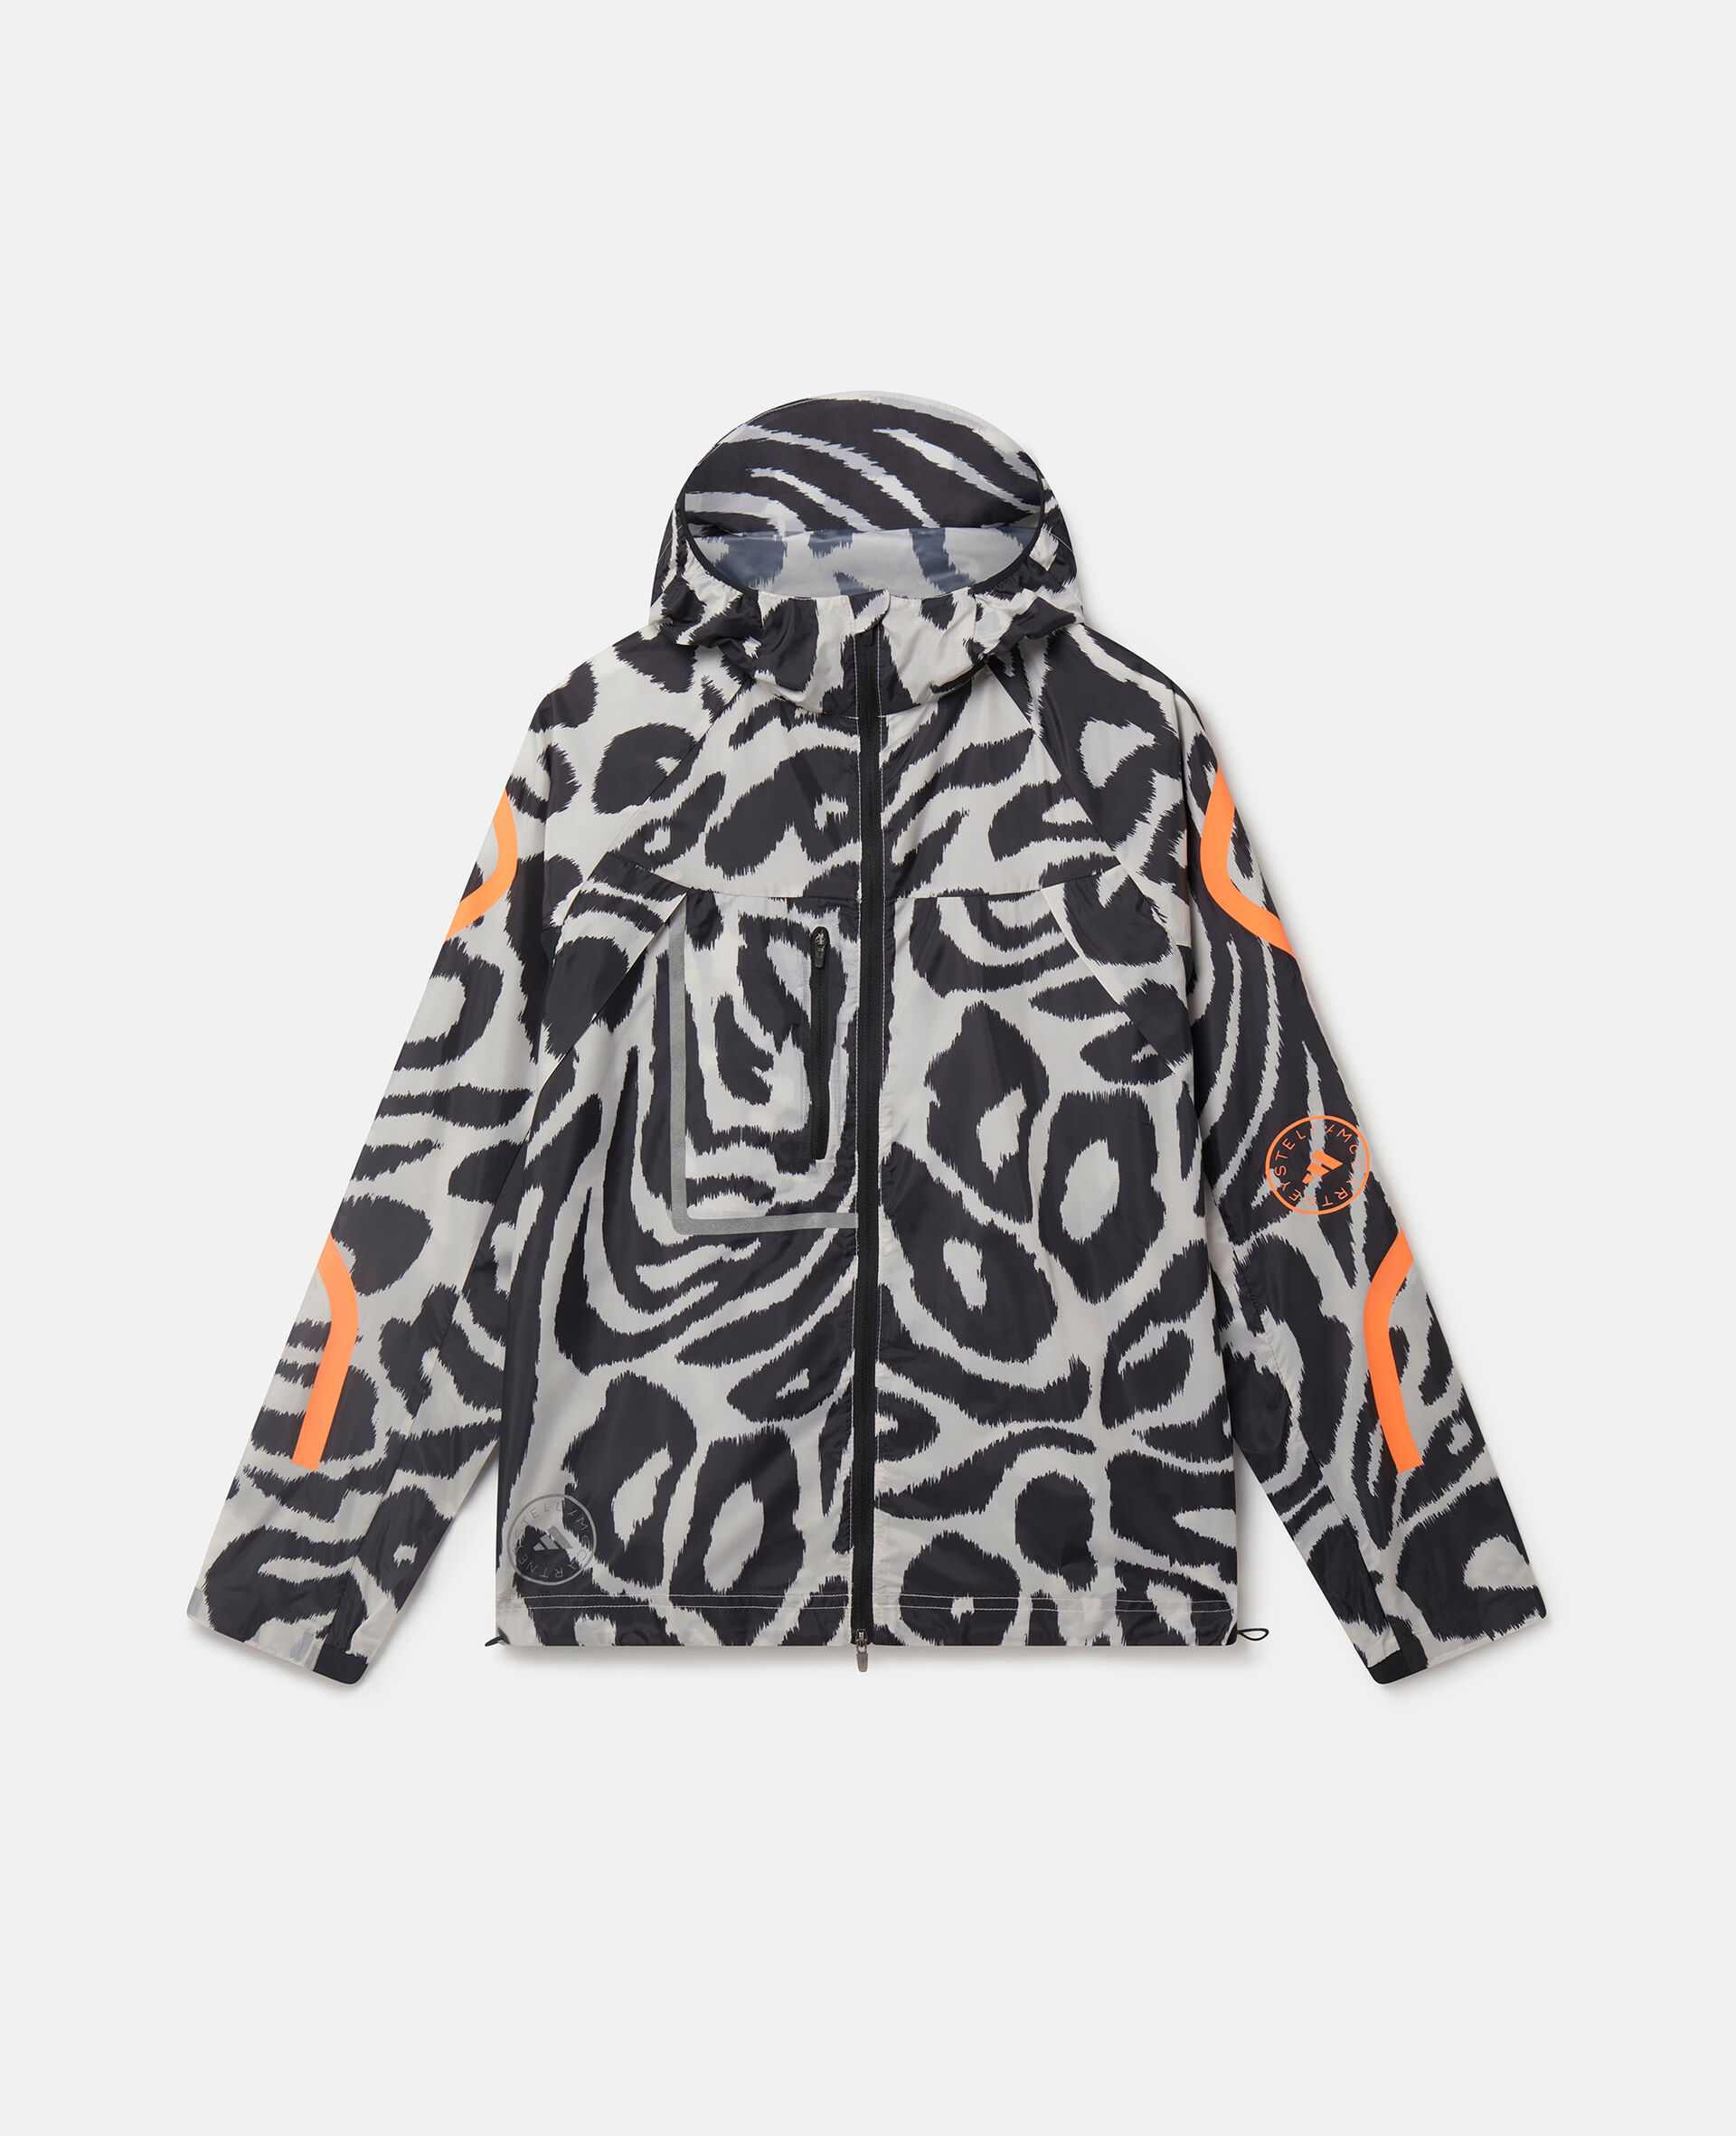 TruePace Leopard Print Running Jacket-Multicolour-medium